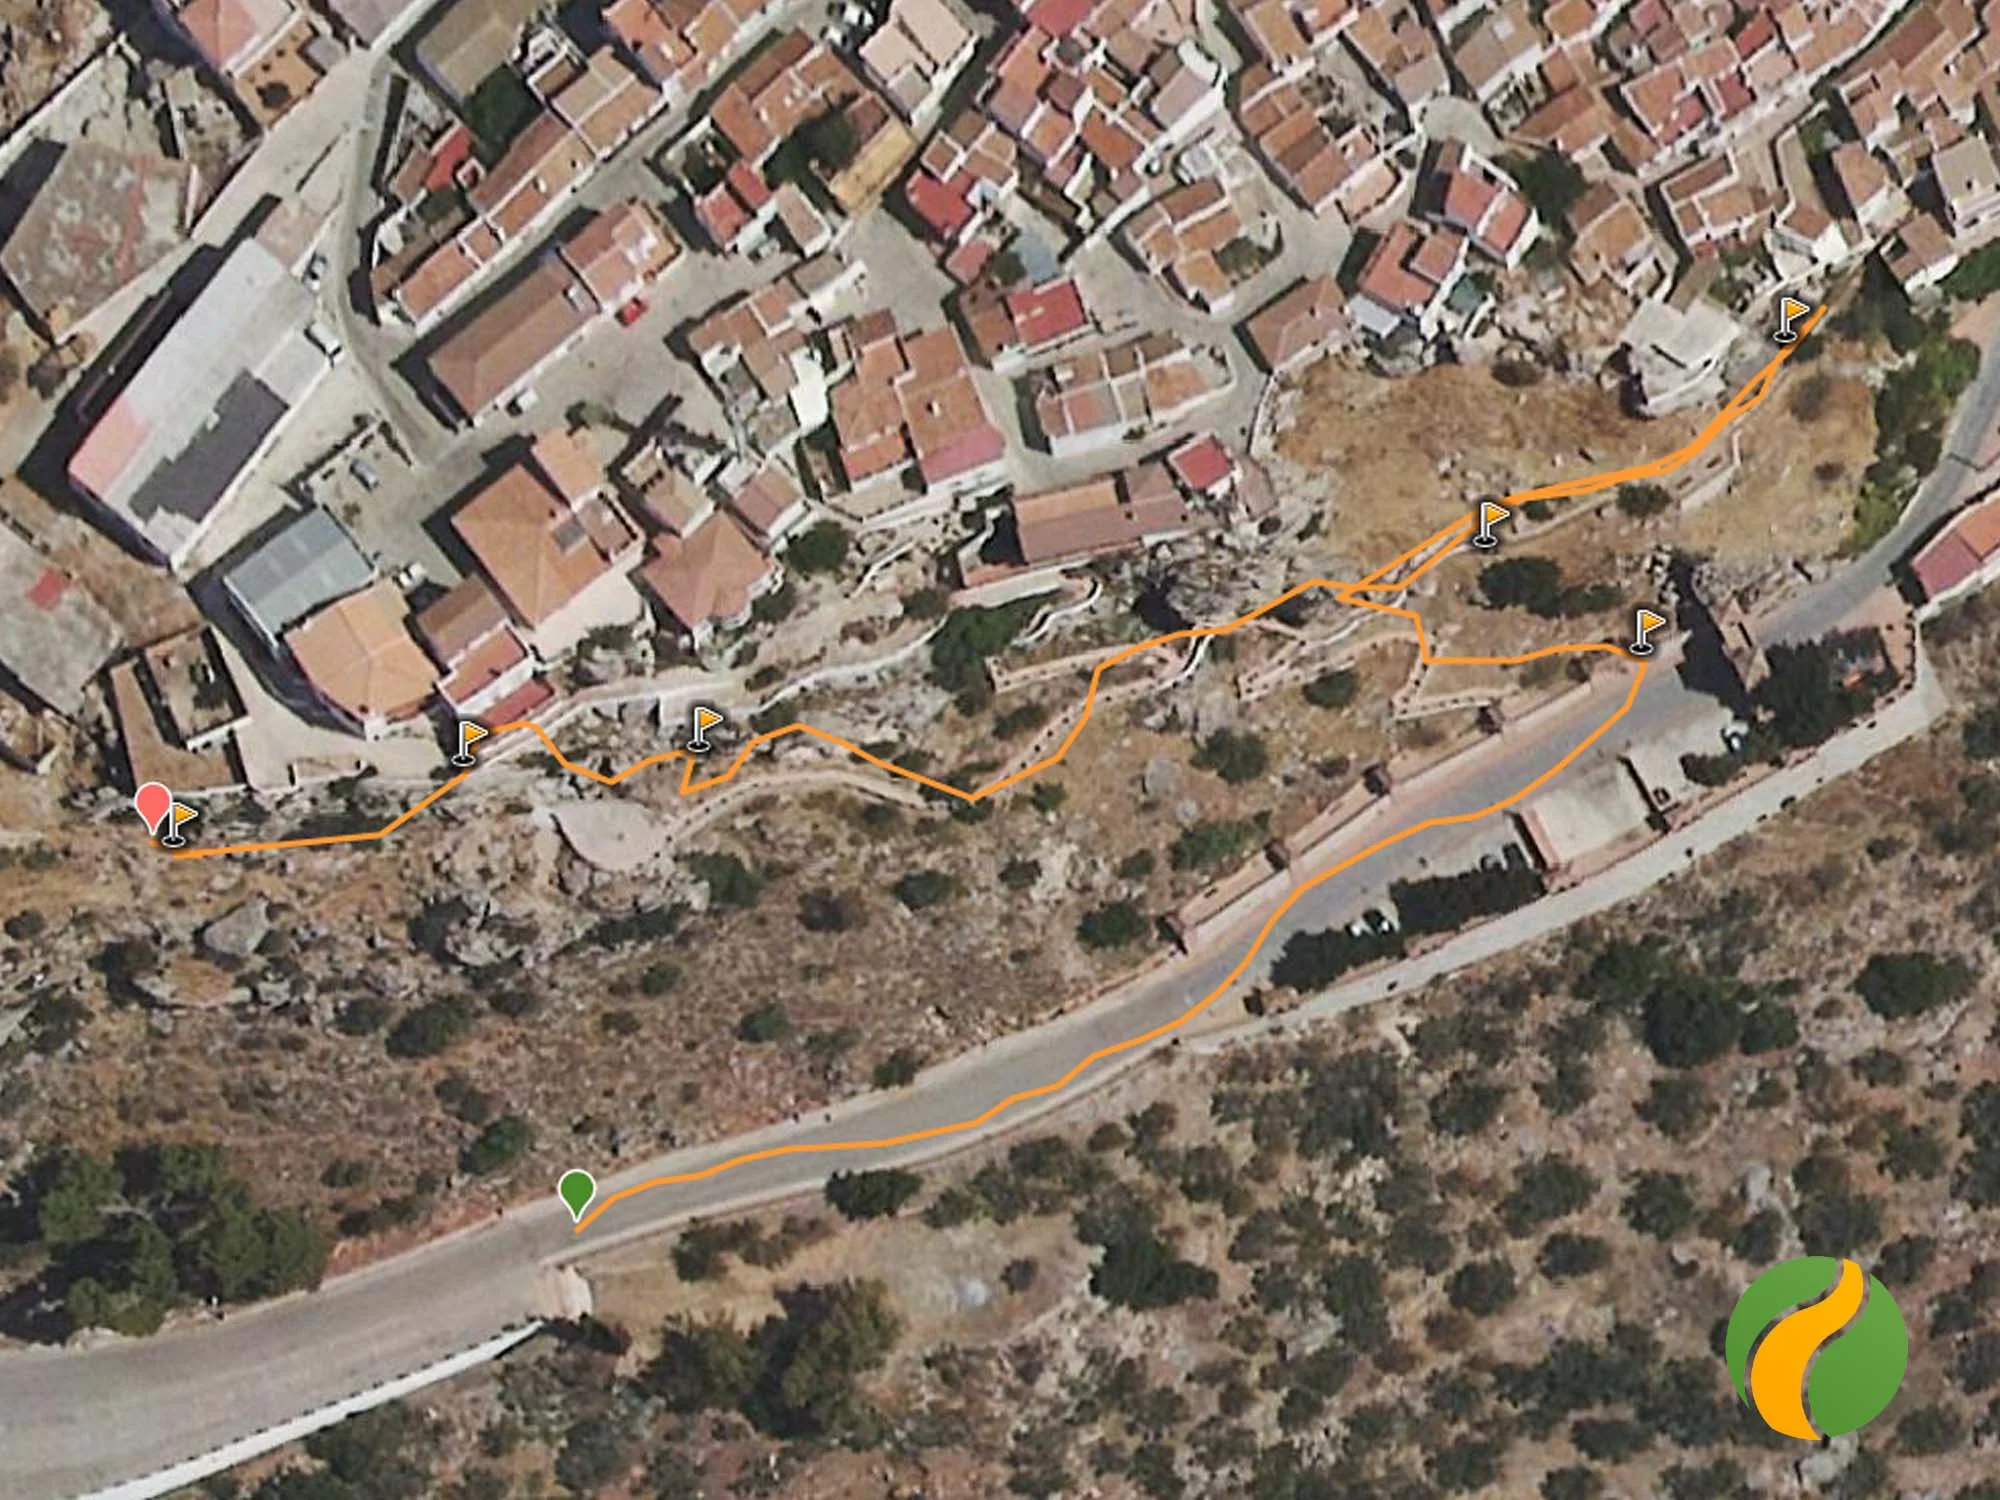 Track, mapa y ruta del acceso a la vía ferrata en Comares